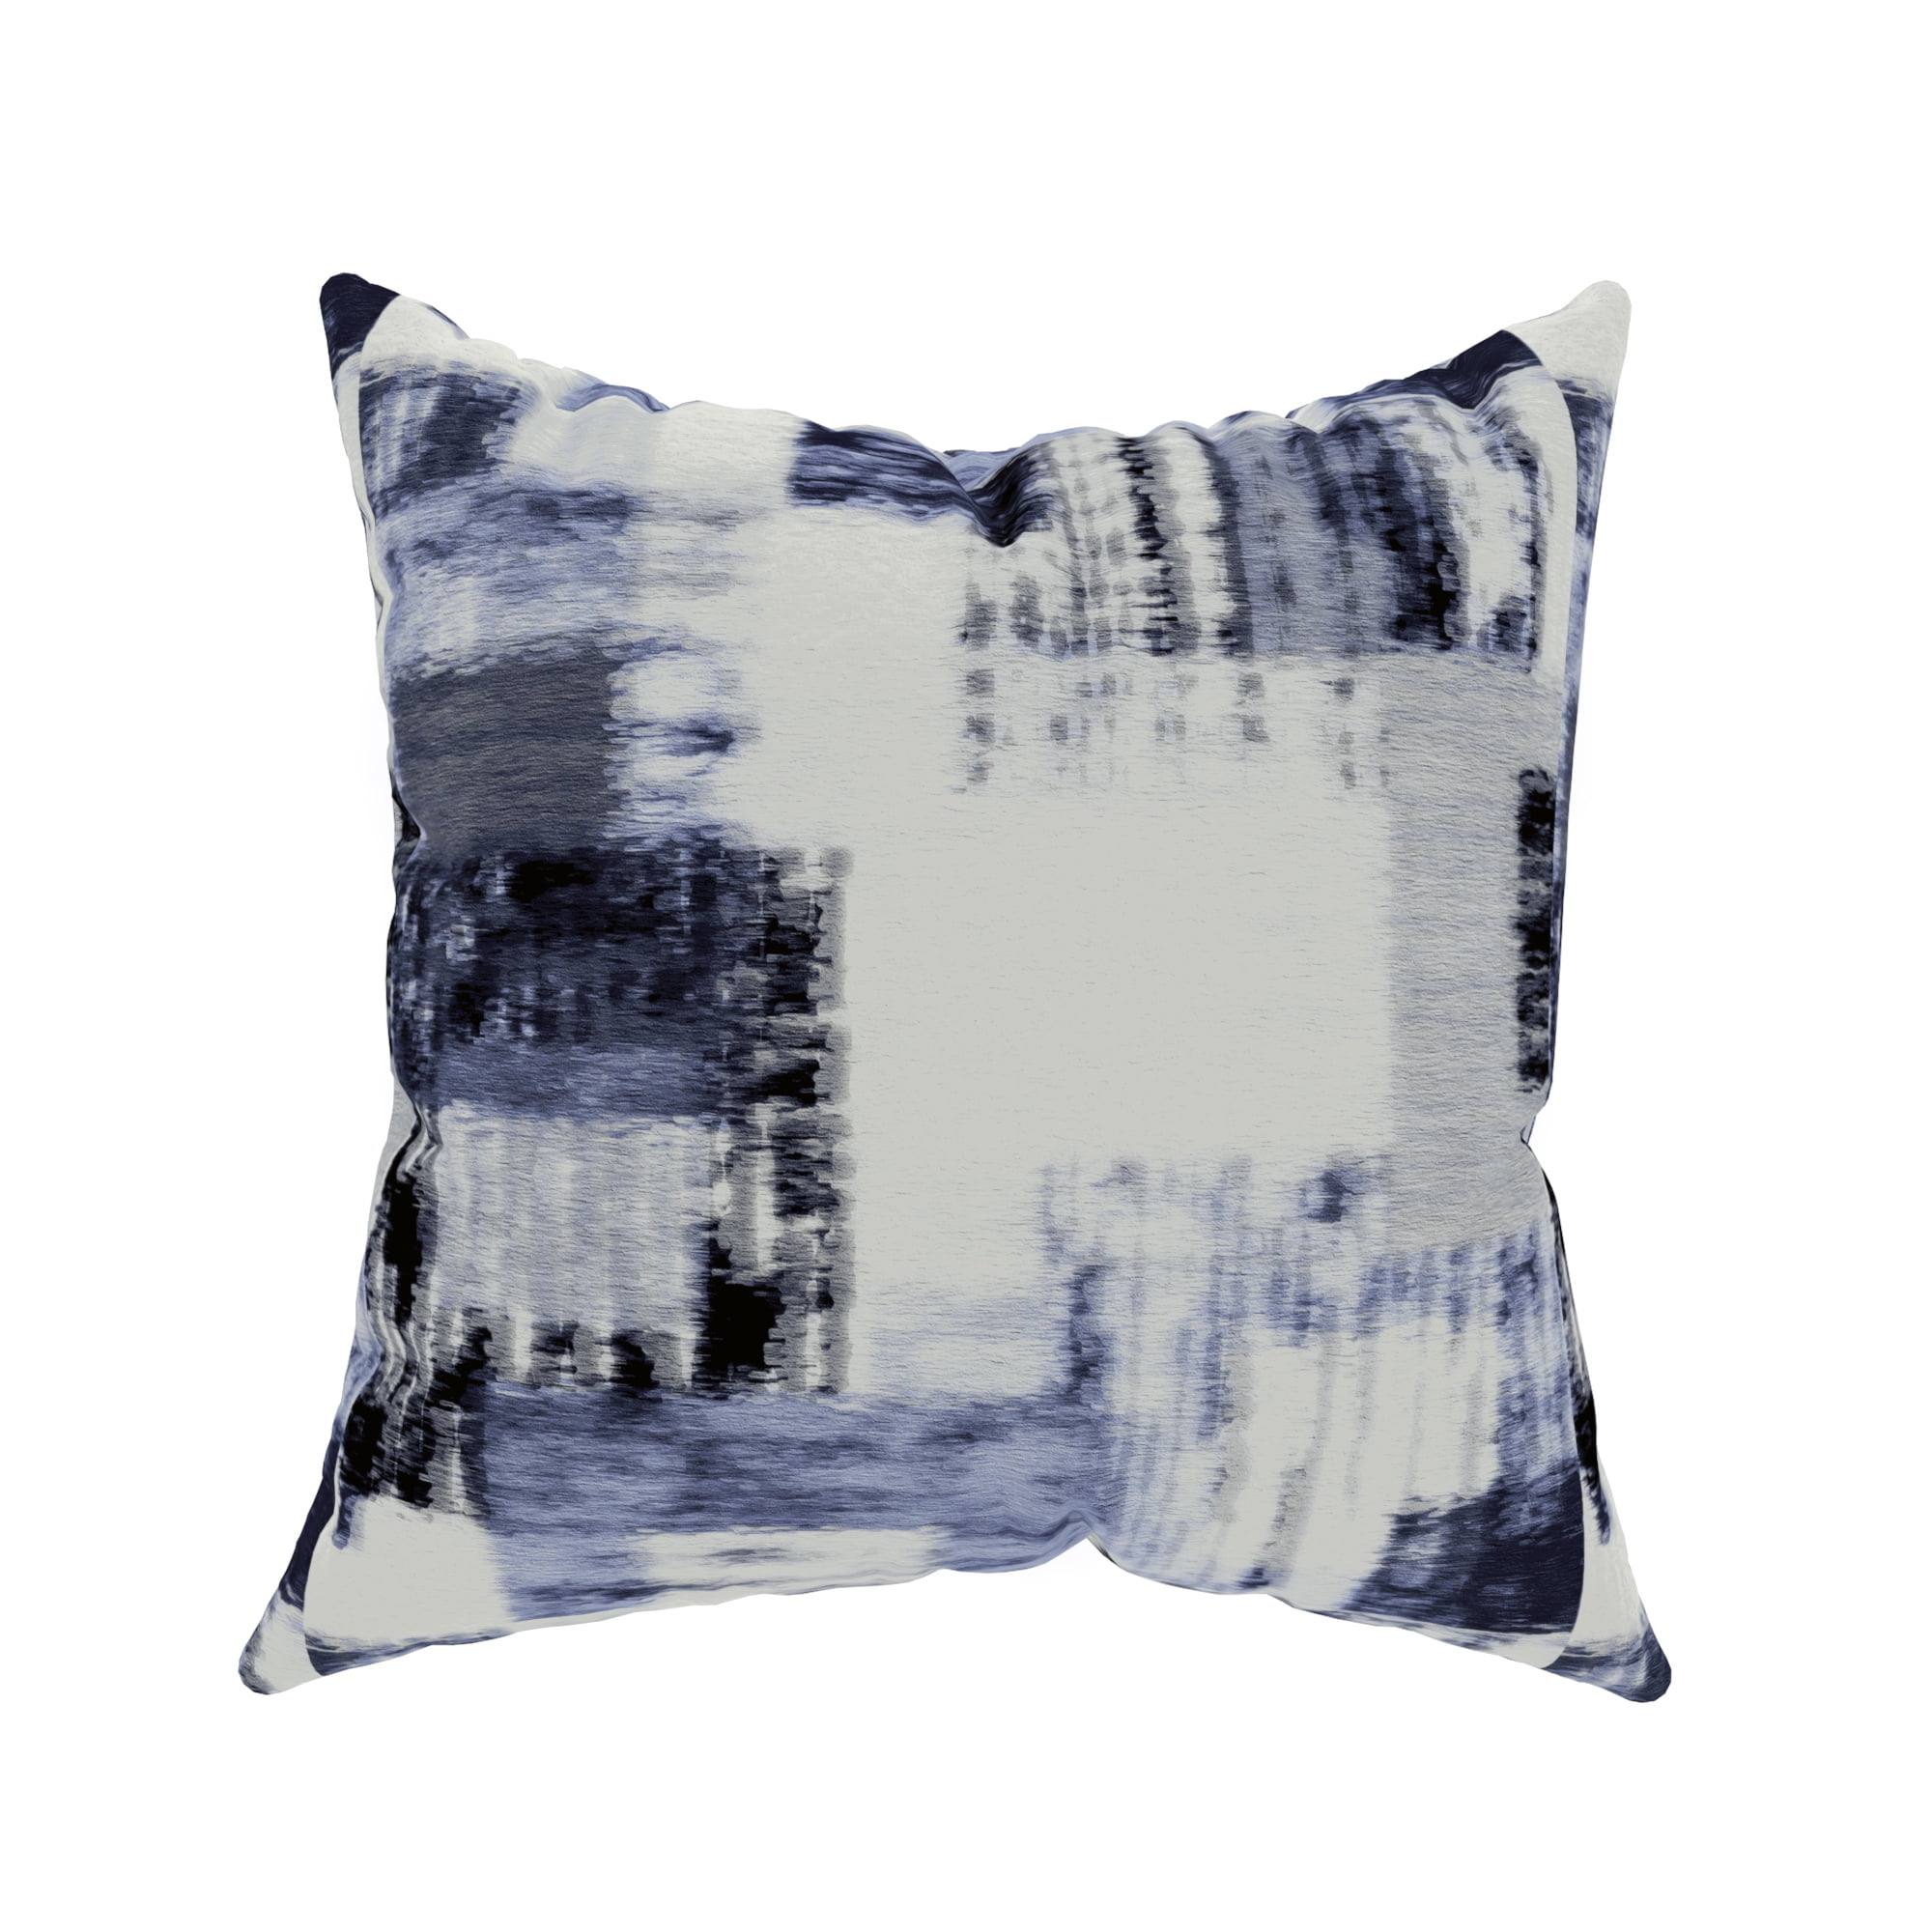 Abstract design Cotton Linen Throw Pillow Case Cushion Cover Home Decor 18" 